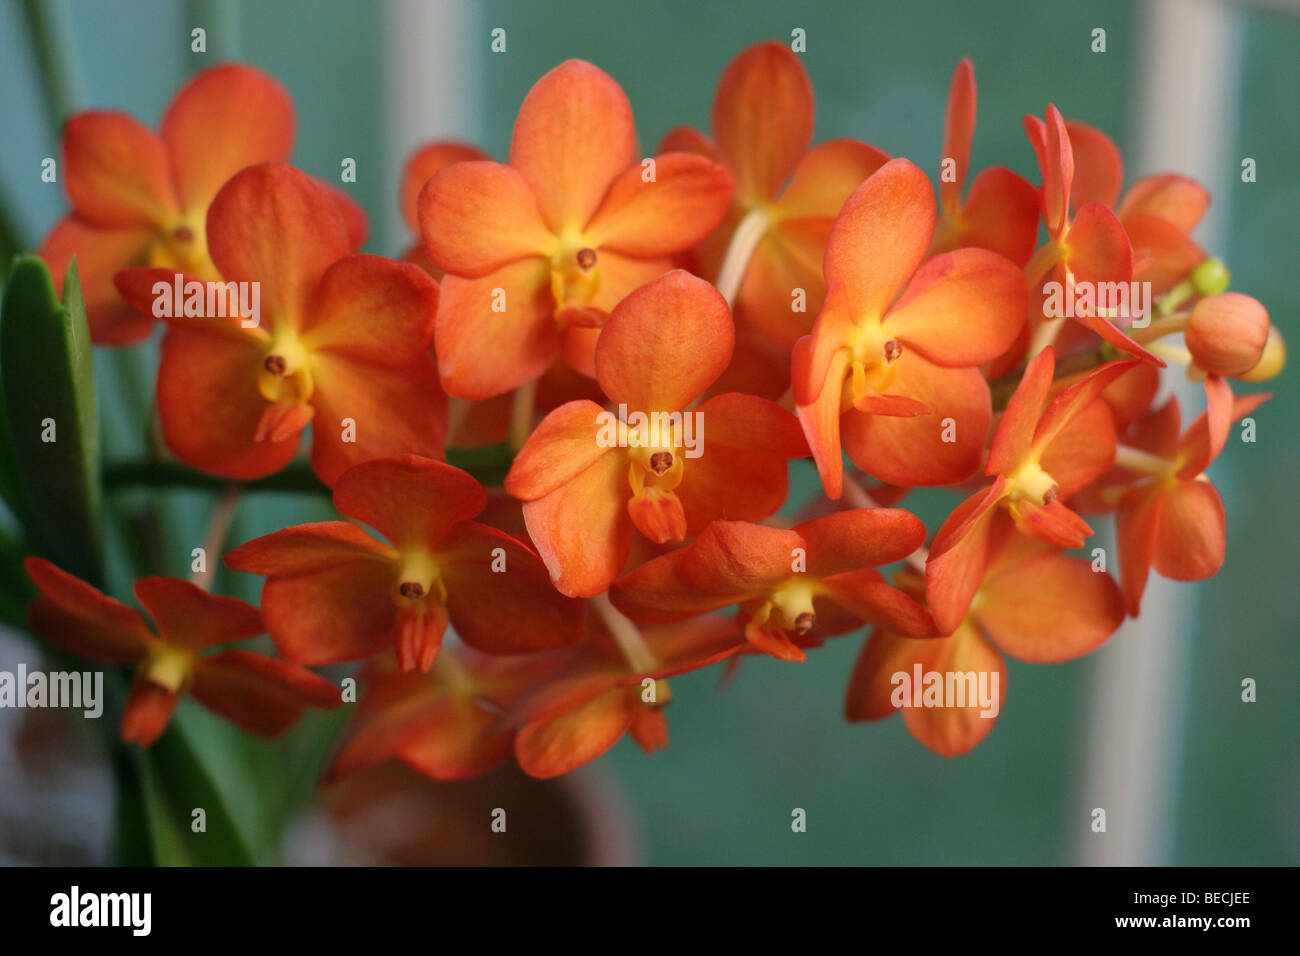 Ascocenda orchid immagini e fotografie stock ad alta risoluzione - Alamy